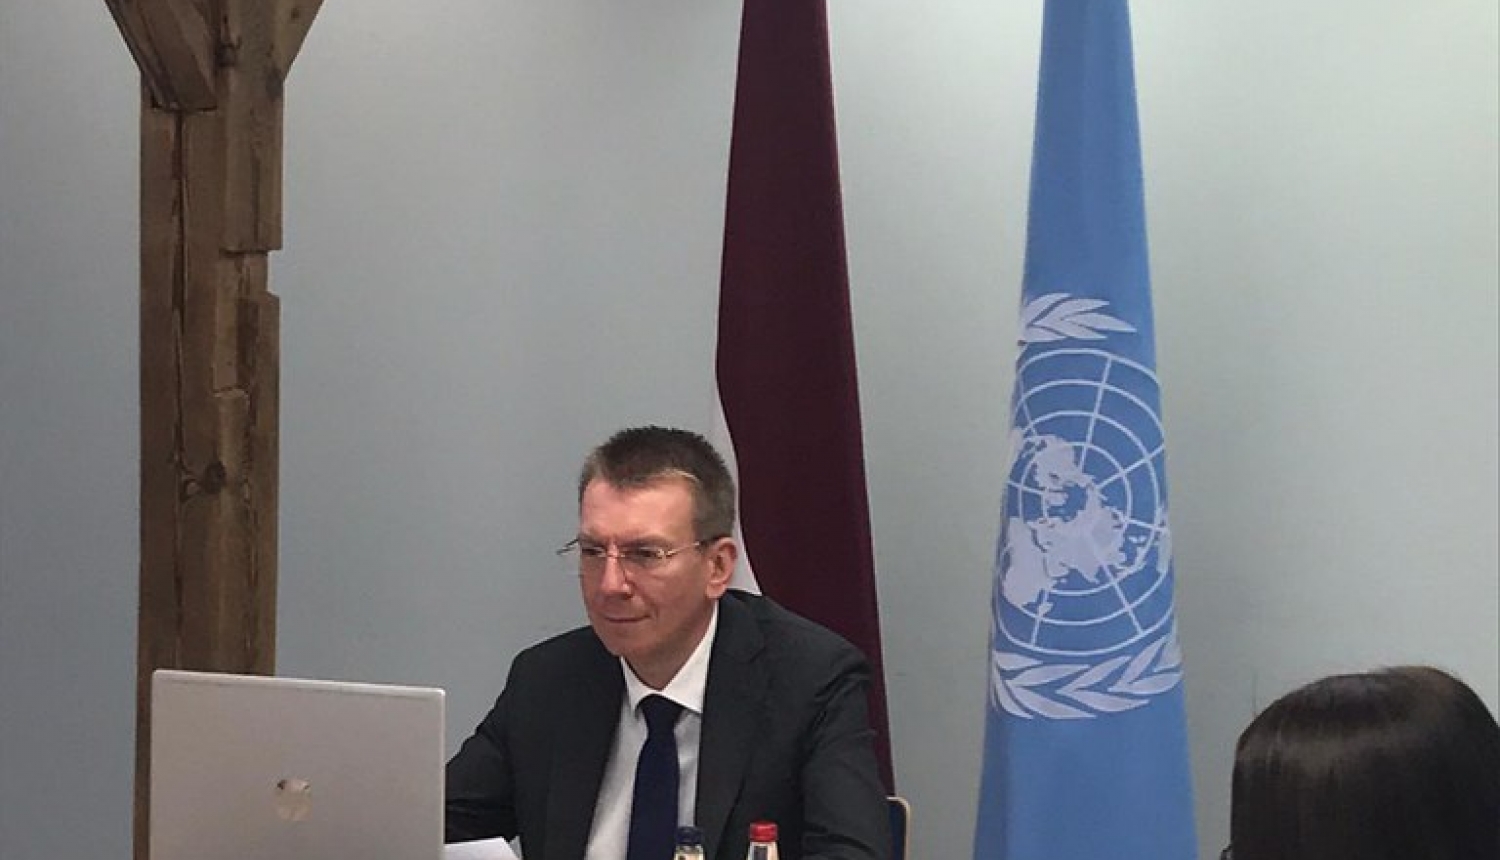 Министр иностранных дел перед государствами-участниками ООН подчеркнул значение международного права в киберпространстве